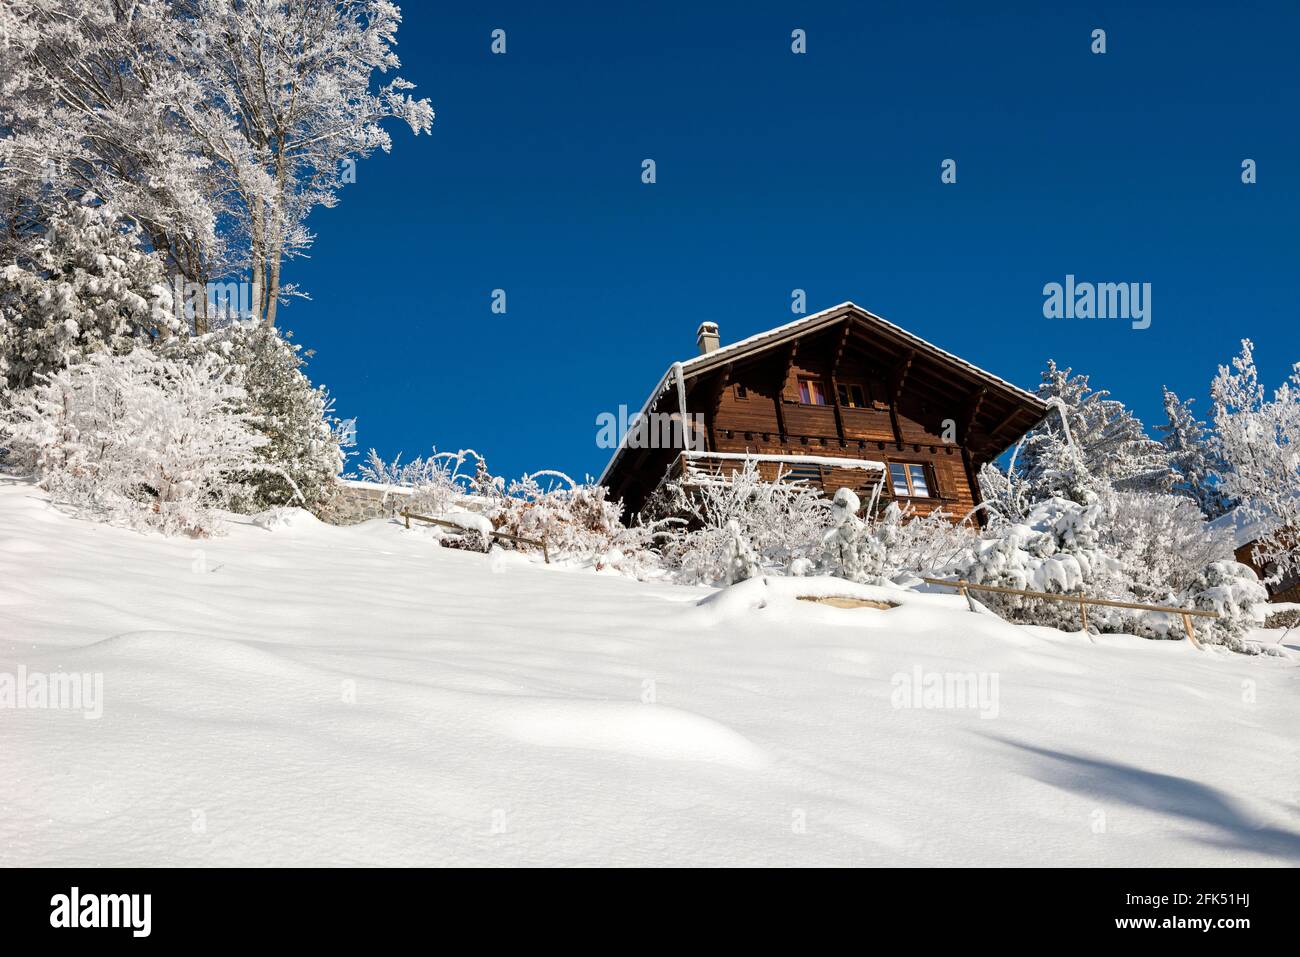 https://c8.alamy.com/comp/2FK51HJ/switzerland-vaud-waadt-hiver-winter-neige-schnee-snow-les-hauts-de-caux-montreux-maisons-huser-houses-chalet-local-caption-swit-2FK51HJ.jpg